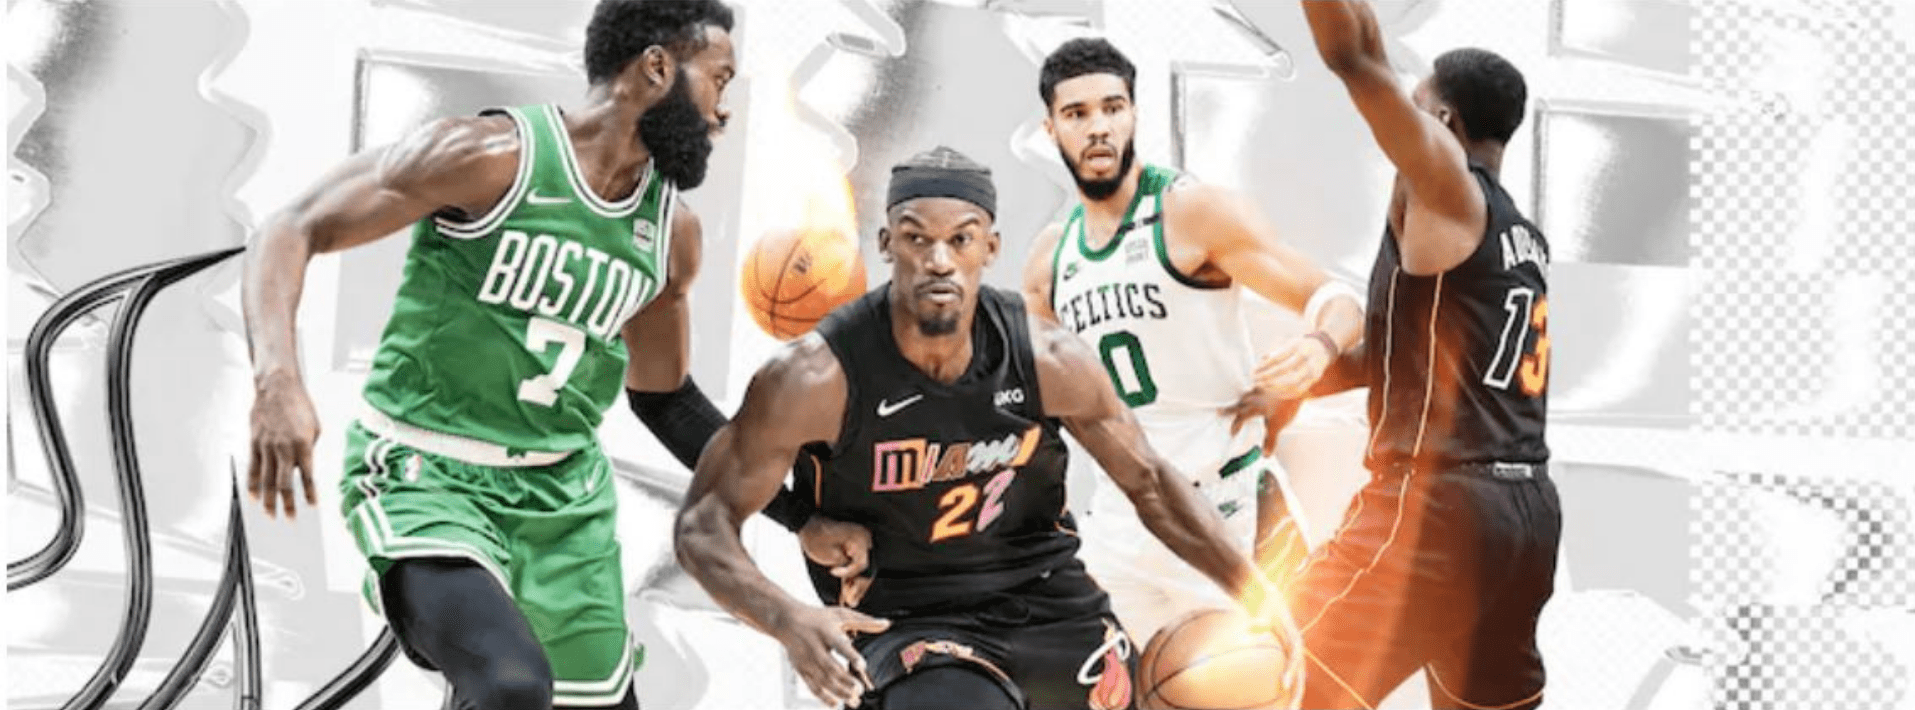 NBA Conference Finals 2022